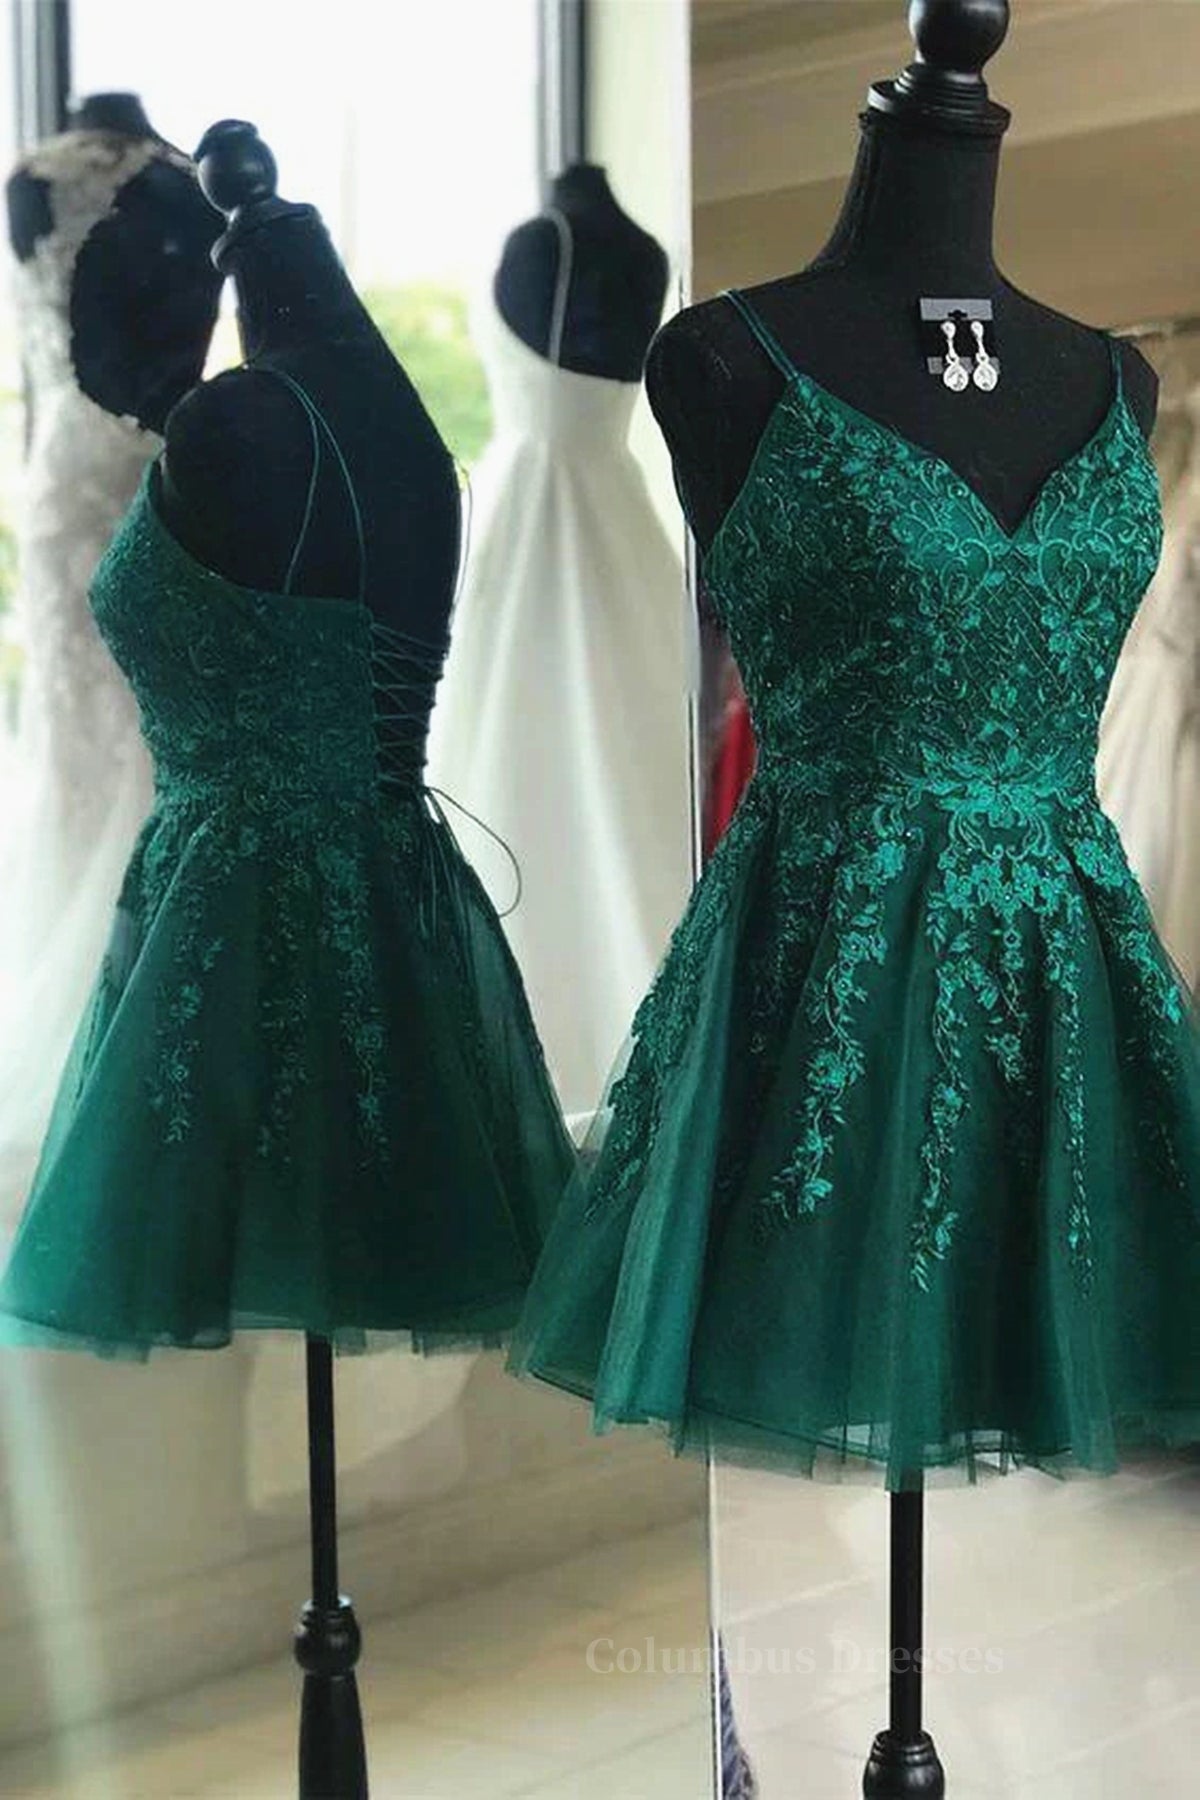 Formal Dresses Websites, Cute V Neck Green Lace Short Prom Homecoming Dresses, Green Lace Formal Dresses, Green Evening Dresses